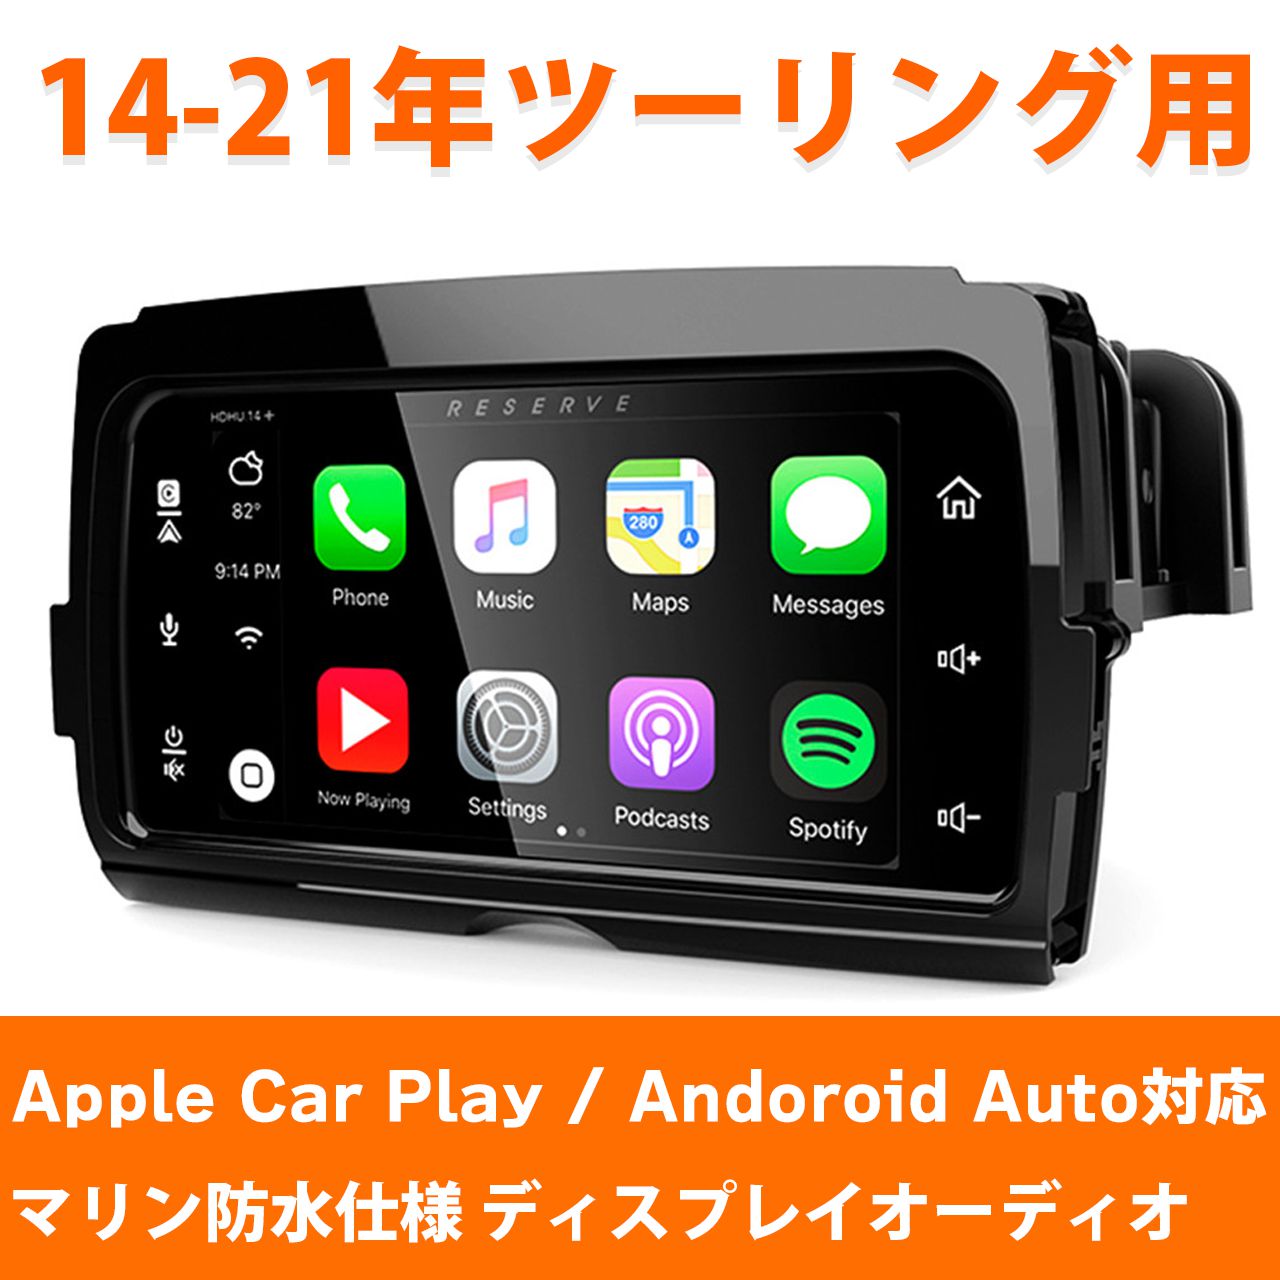 【数量限定予約】LBPS■ストリームサウンドリザーブ HDHU14+ Apple Car play ,Android Auto対応 マリン防水仕様 【14-21年 ツーリング用】